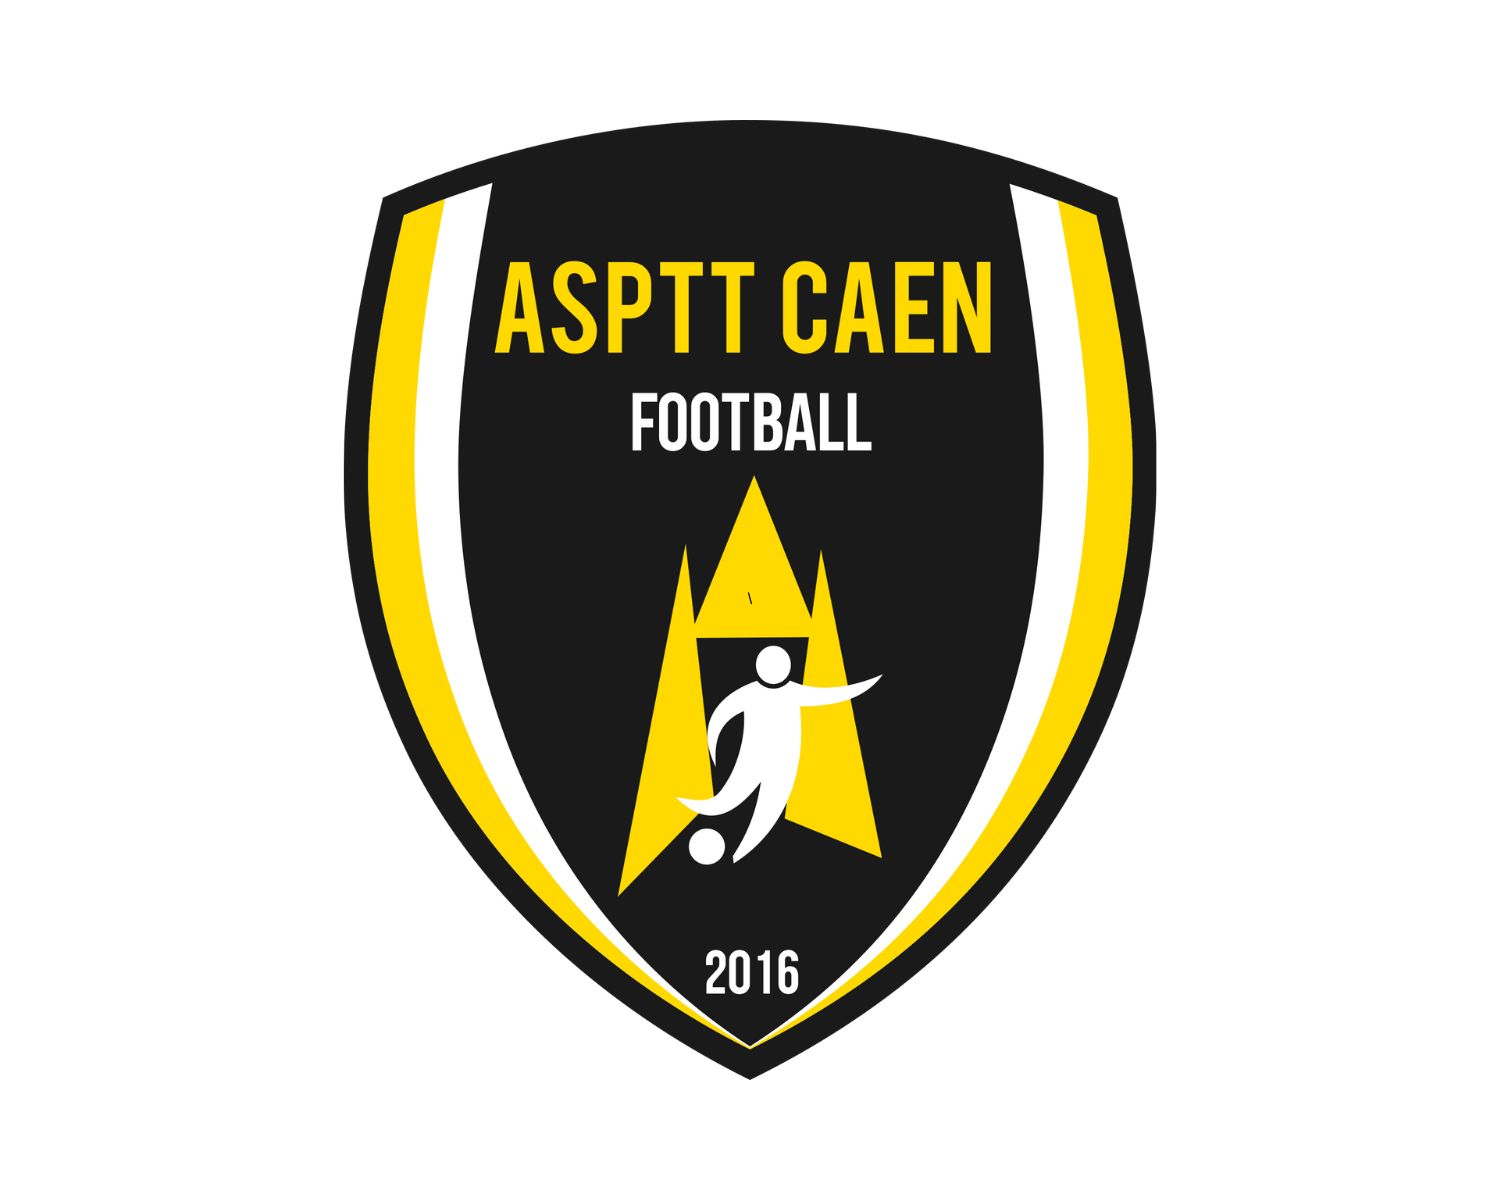 asptt-caen-football-24-football-club-facts